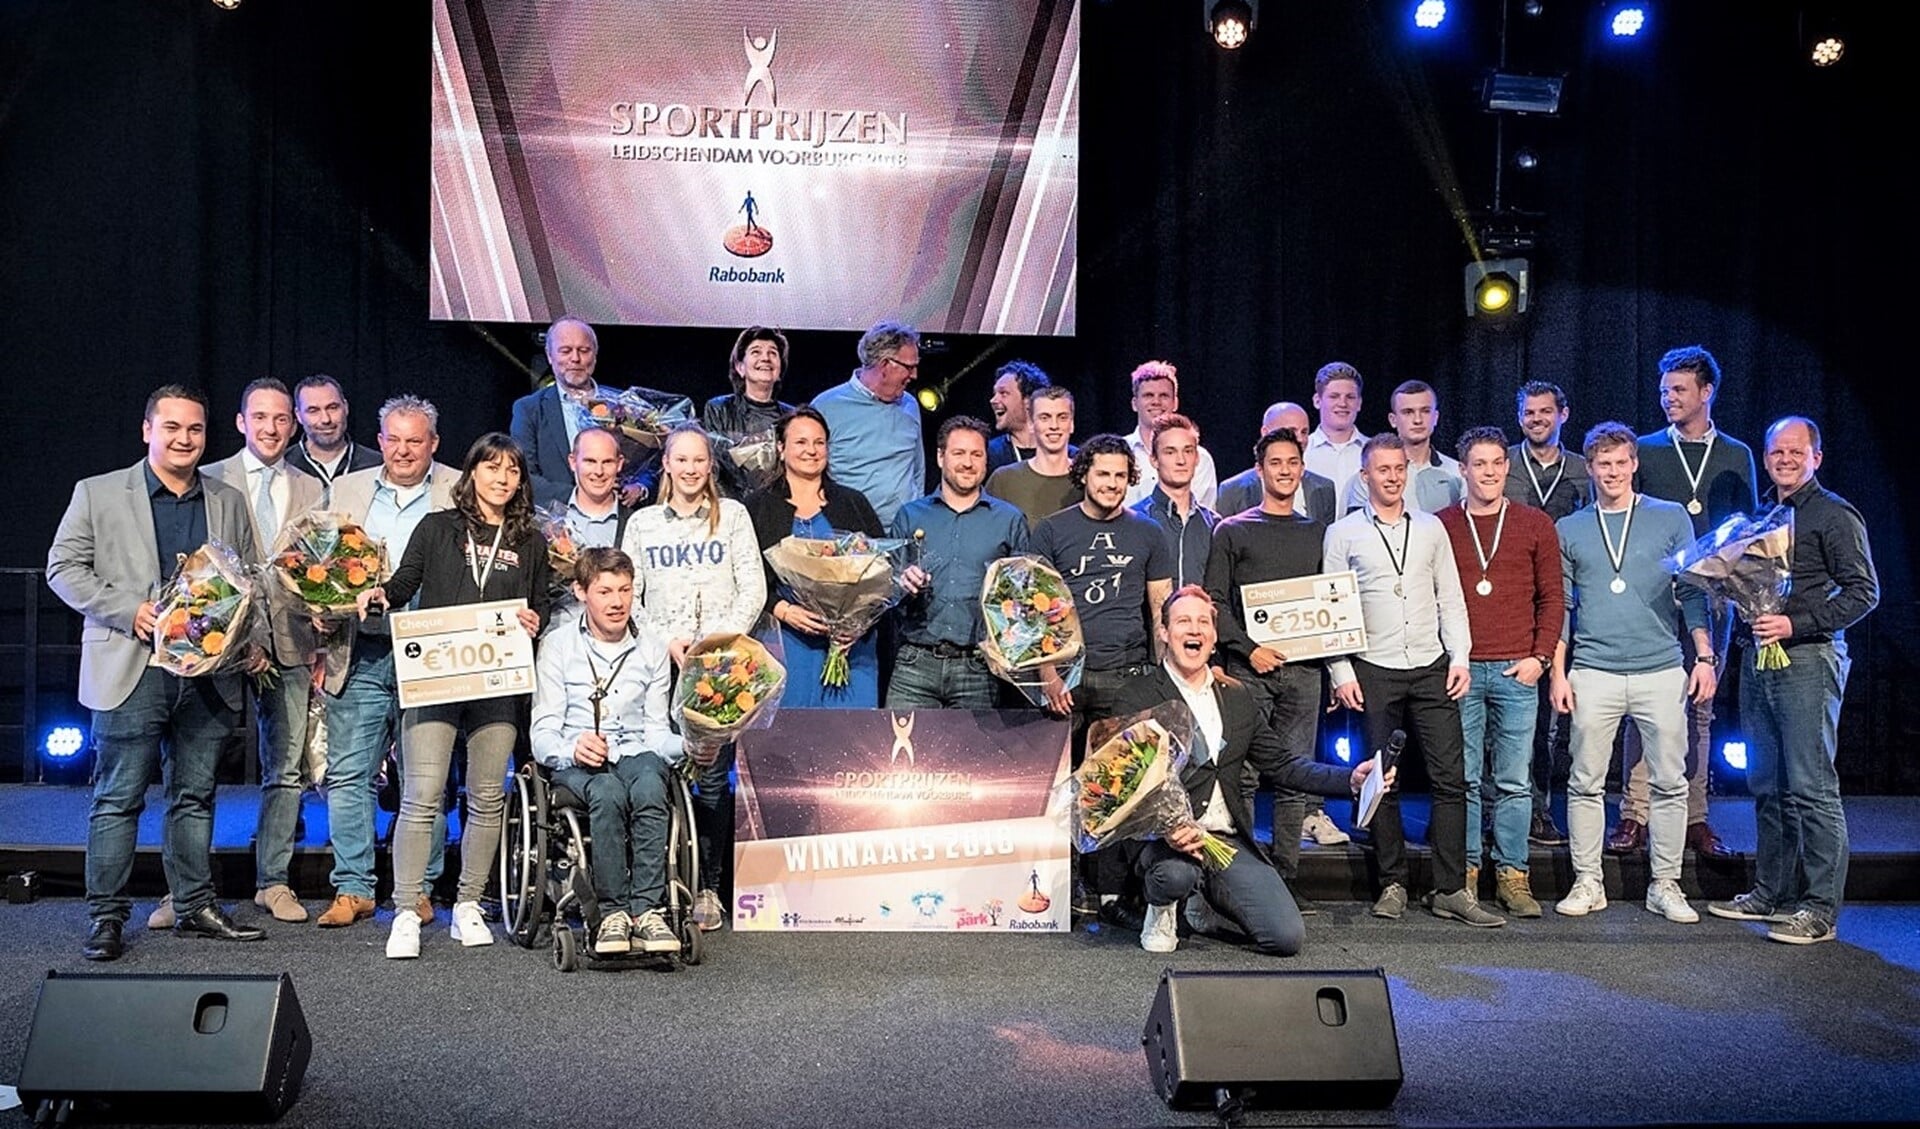 Alle Sportprijswinnaars van 2018 uit Leidschendam-Voorburg kwamen aan het einde samen op het podium (foto: Hein Athmer).